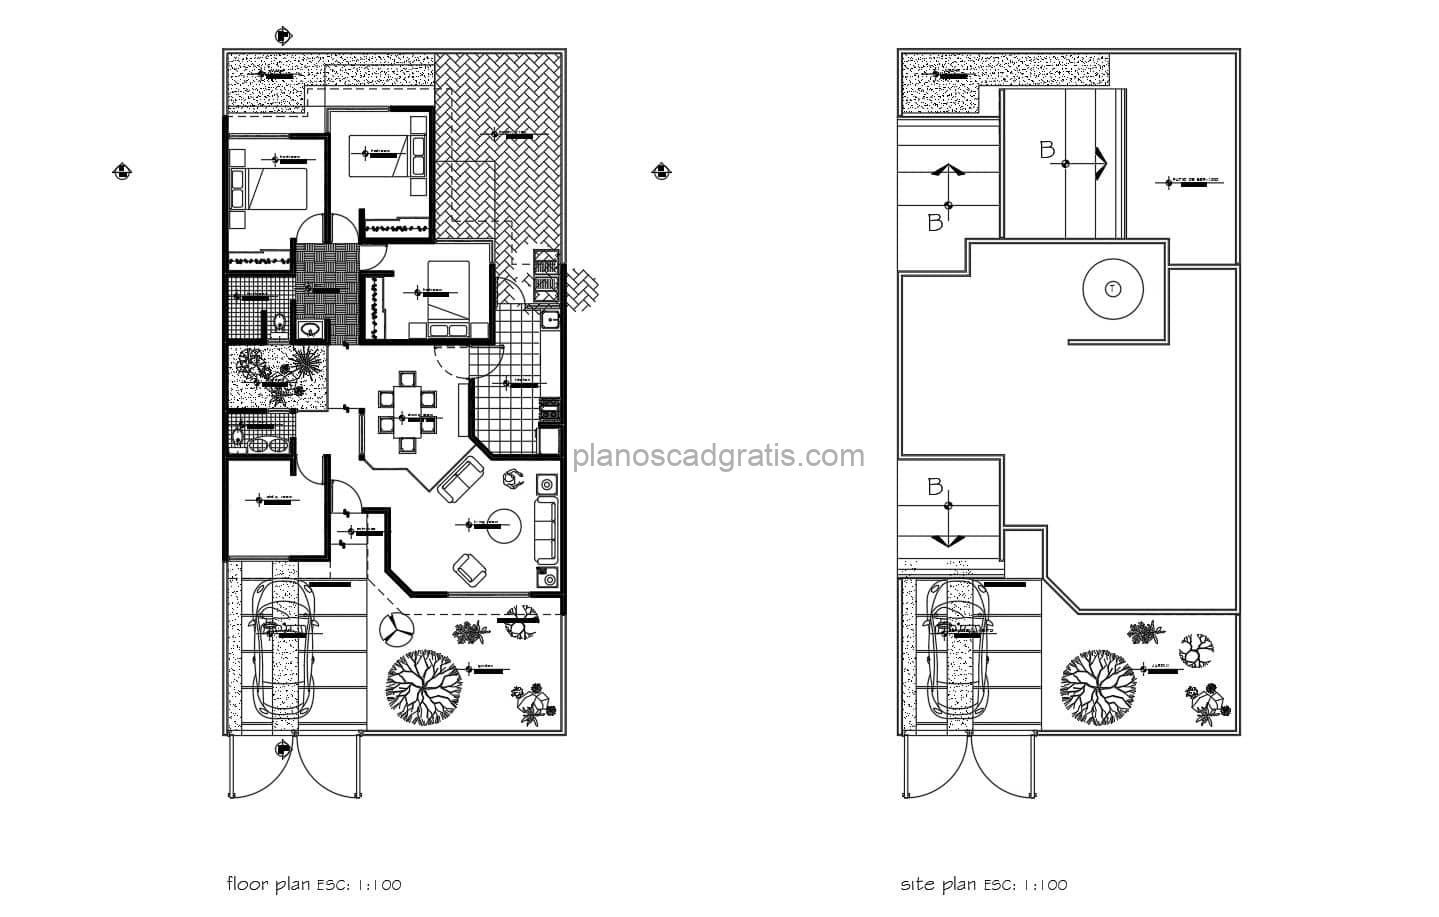 planos completos en formato dwg de autocad de residencia de un nivel con tres habitaciones y garaje cerrado, plano con dimensiones y mobiliario de dwg para descarga gratis